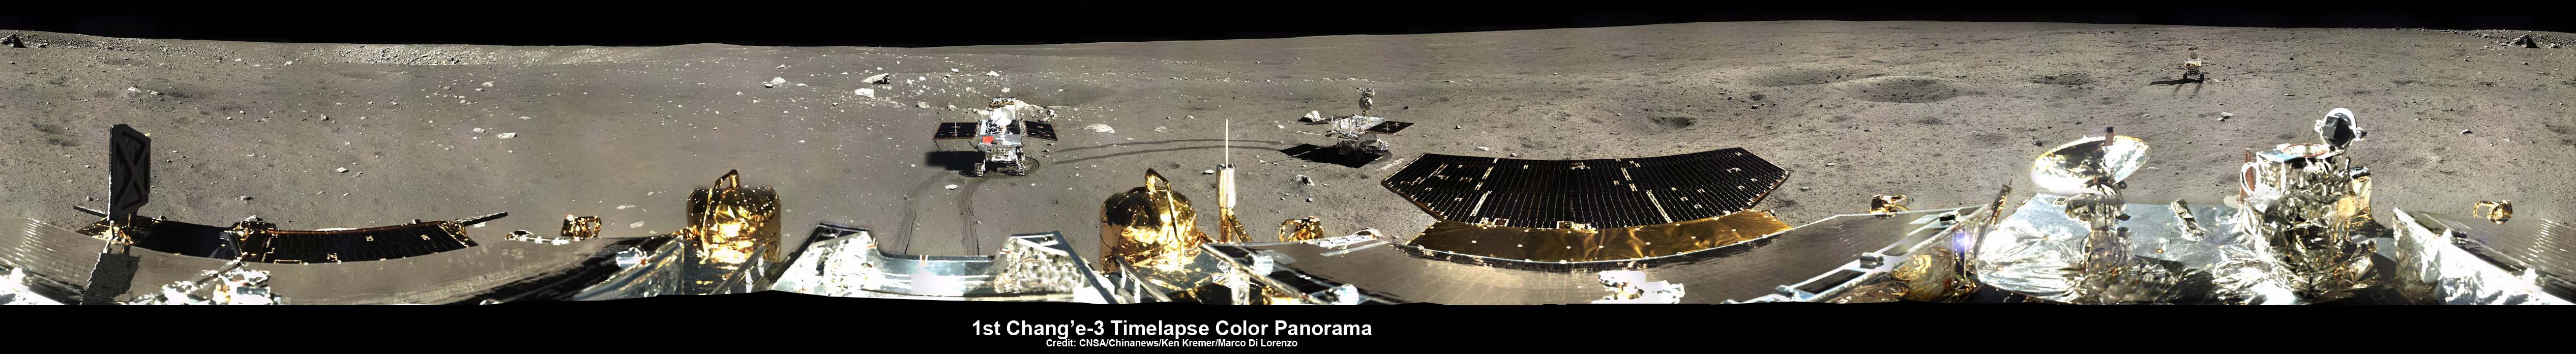 Panorama à 360° de la surface lunaire. Photos prises par l'atterrisseur de la mission Chang'e 3